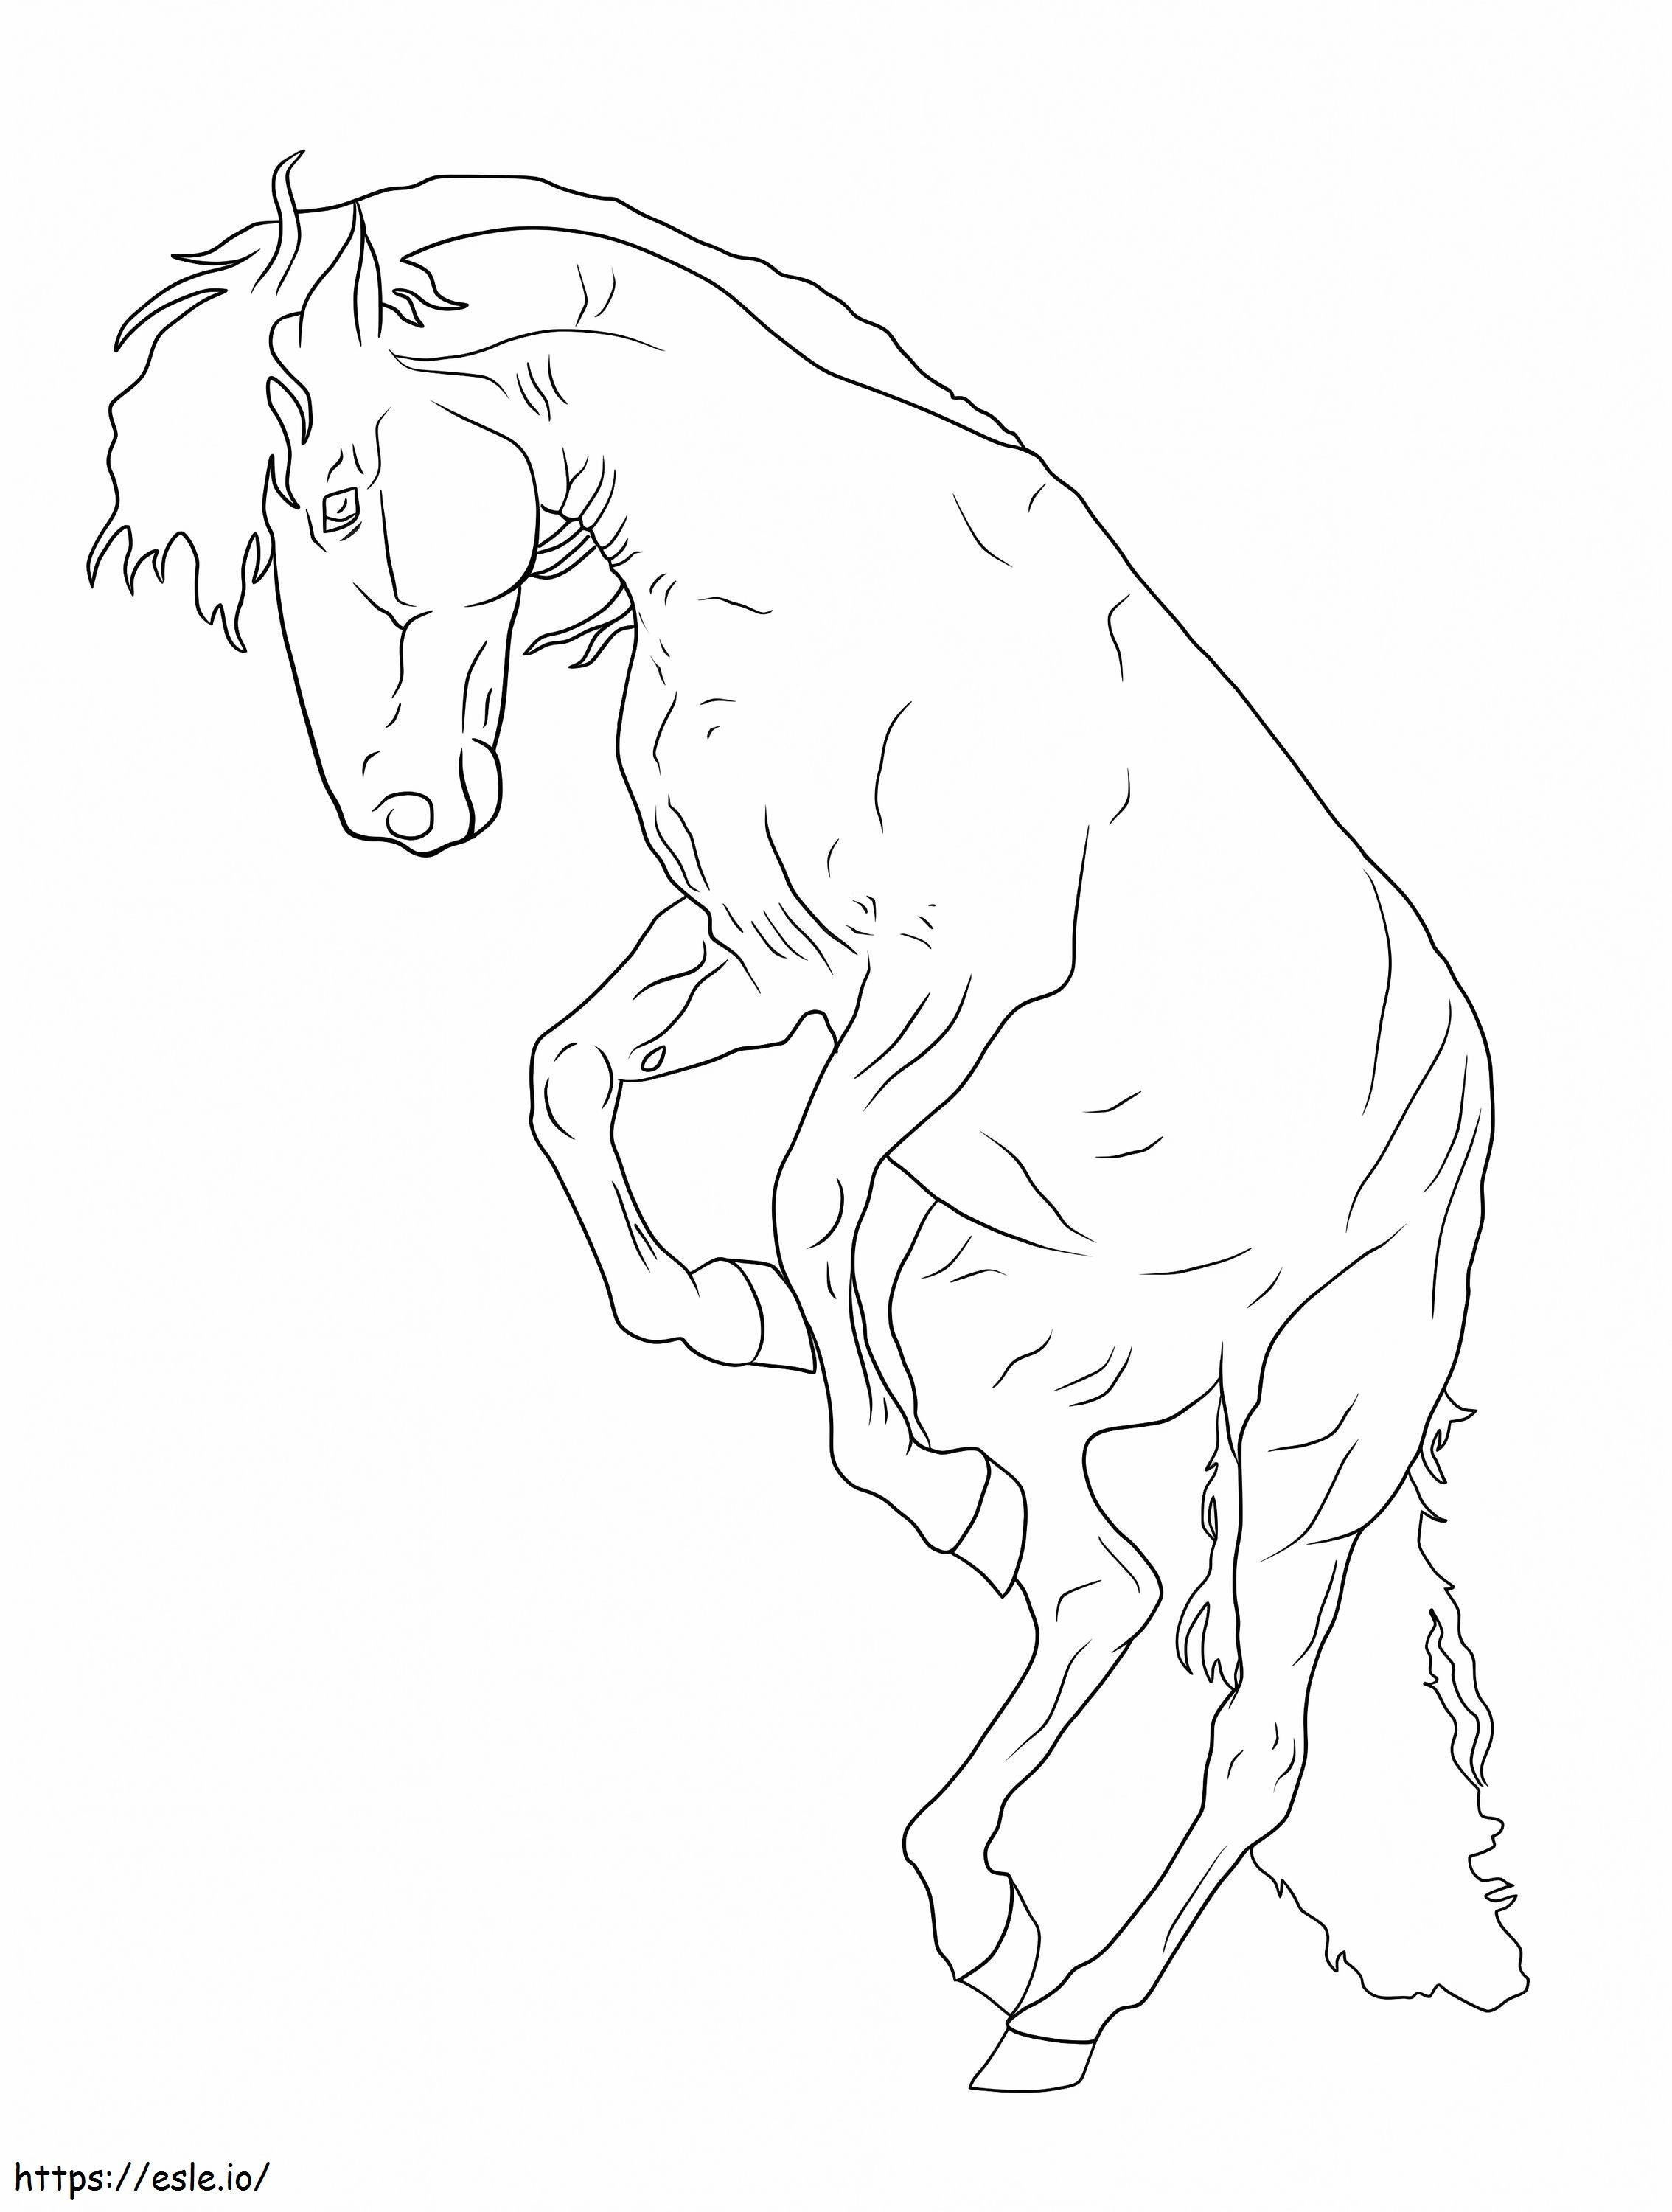 Ein Pferd ausmalbilder